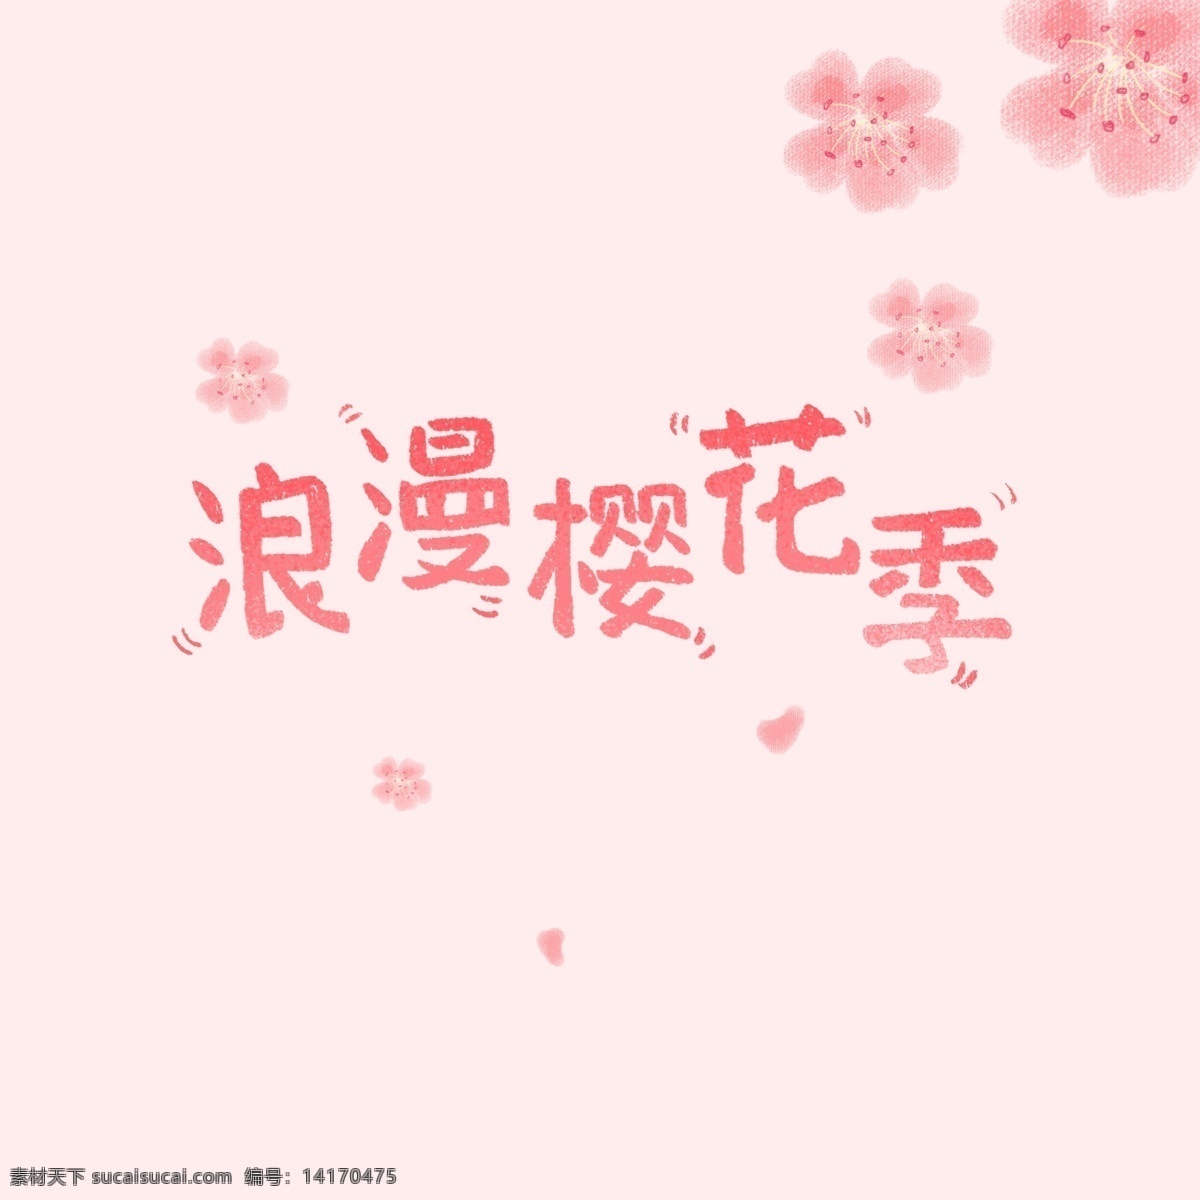 浪漫 樱花 季 唯美 手绘 字体 可爱 花 卡通 粉色 花瓣 渐变字体 粉色艺术字